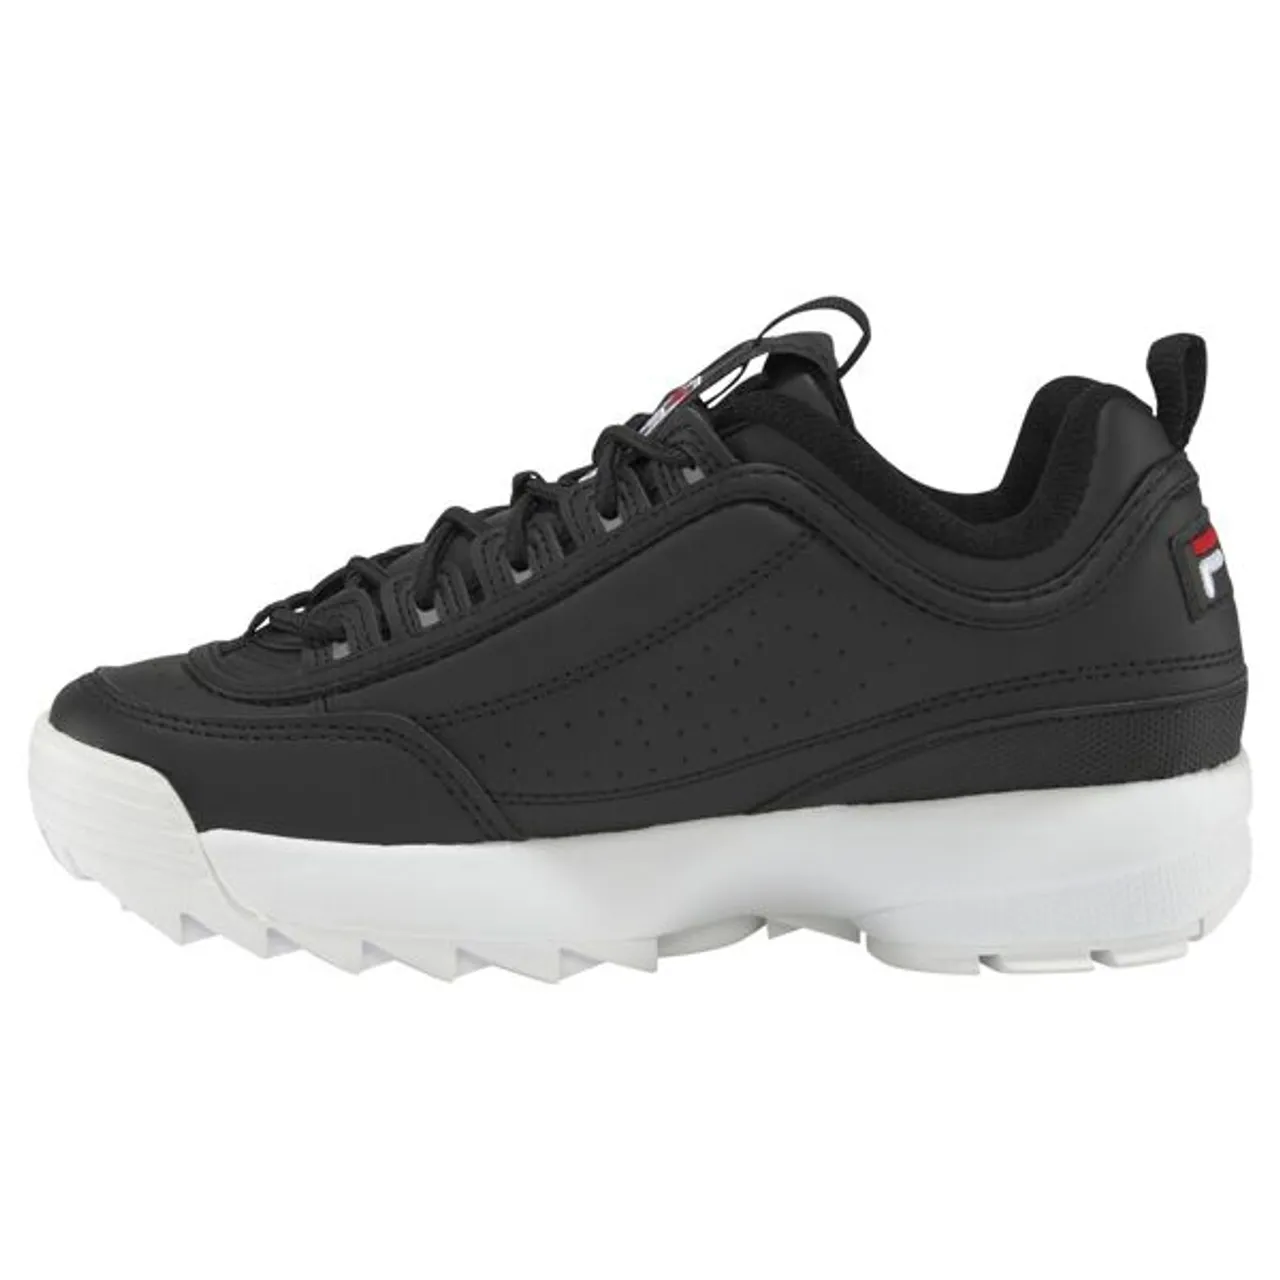 Sneaker FILA "Disruptor low" Gr. 42, schwarz-weiß (schwarz, weiß) Schuhe Sneaker